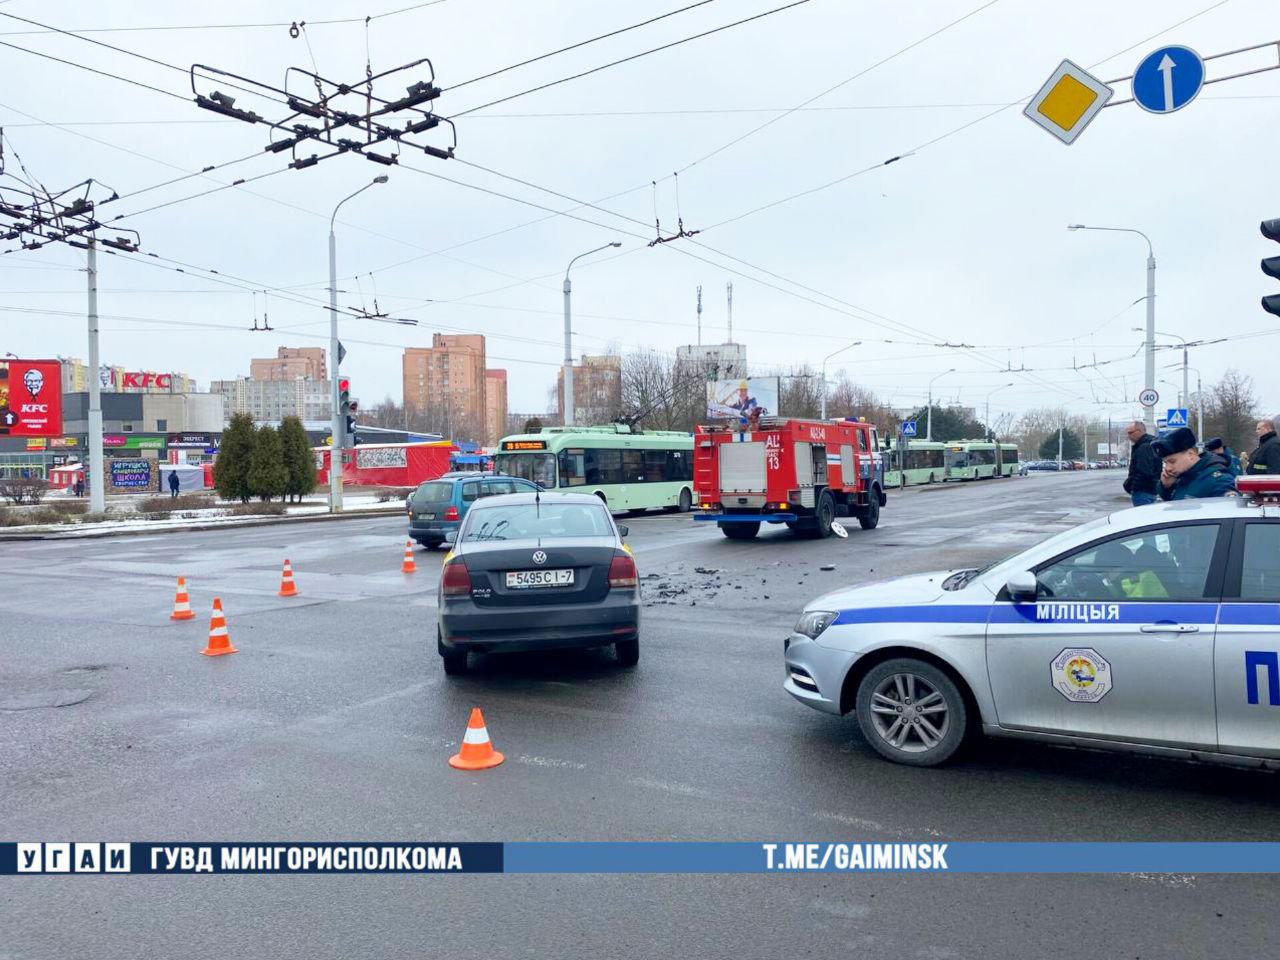 Пожарный автомобиль и такси столкнулись в Минске